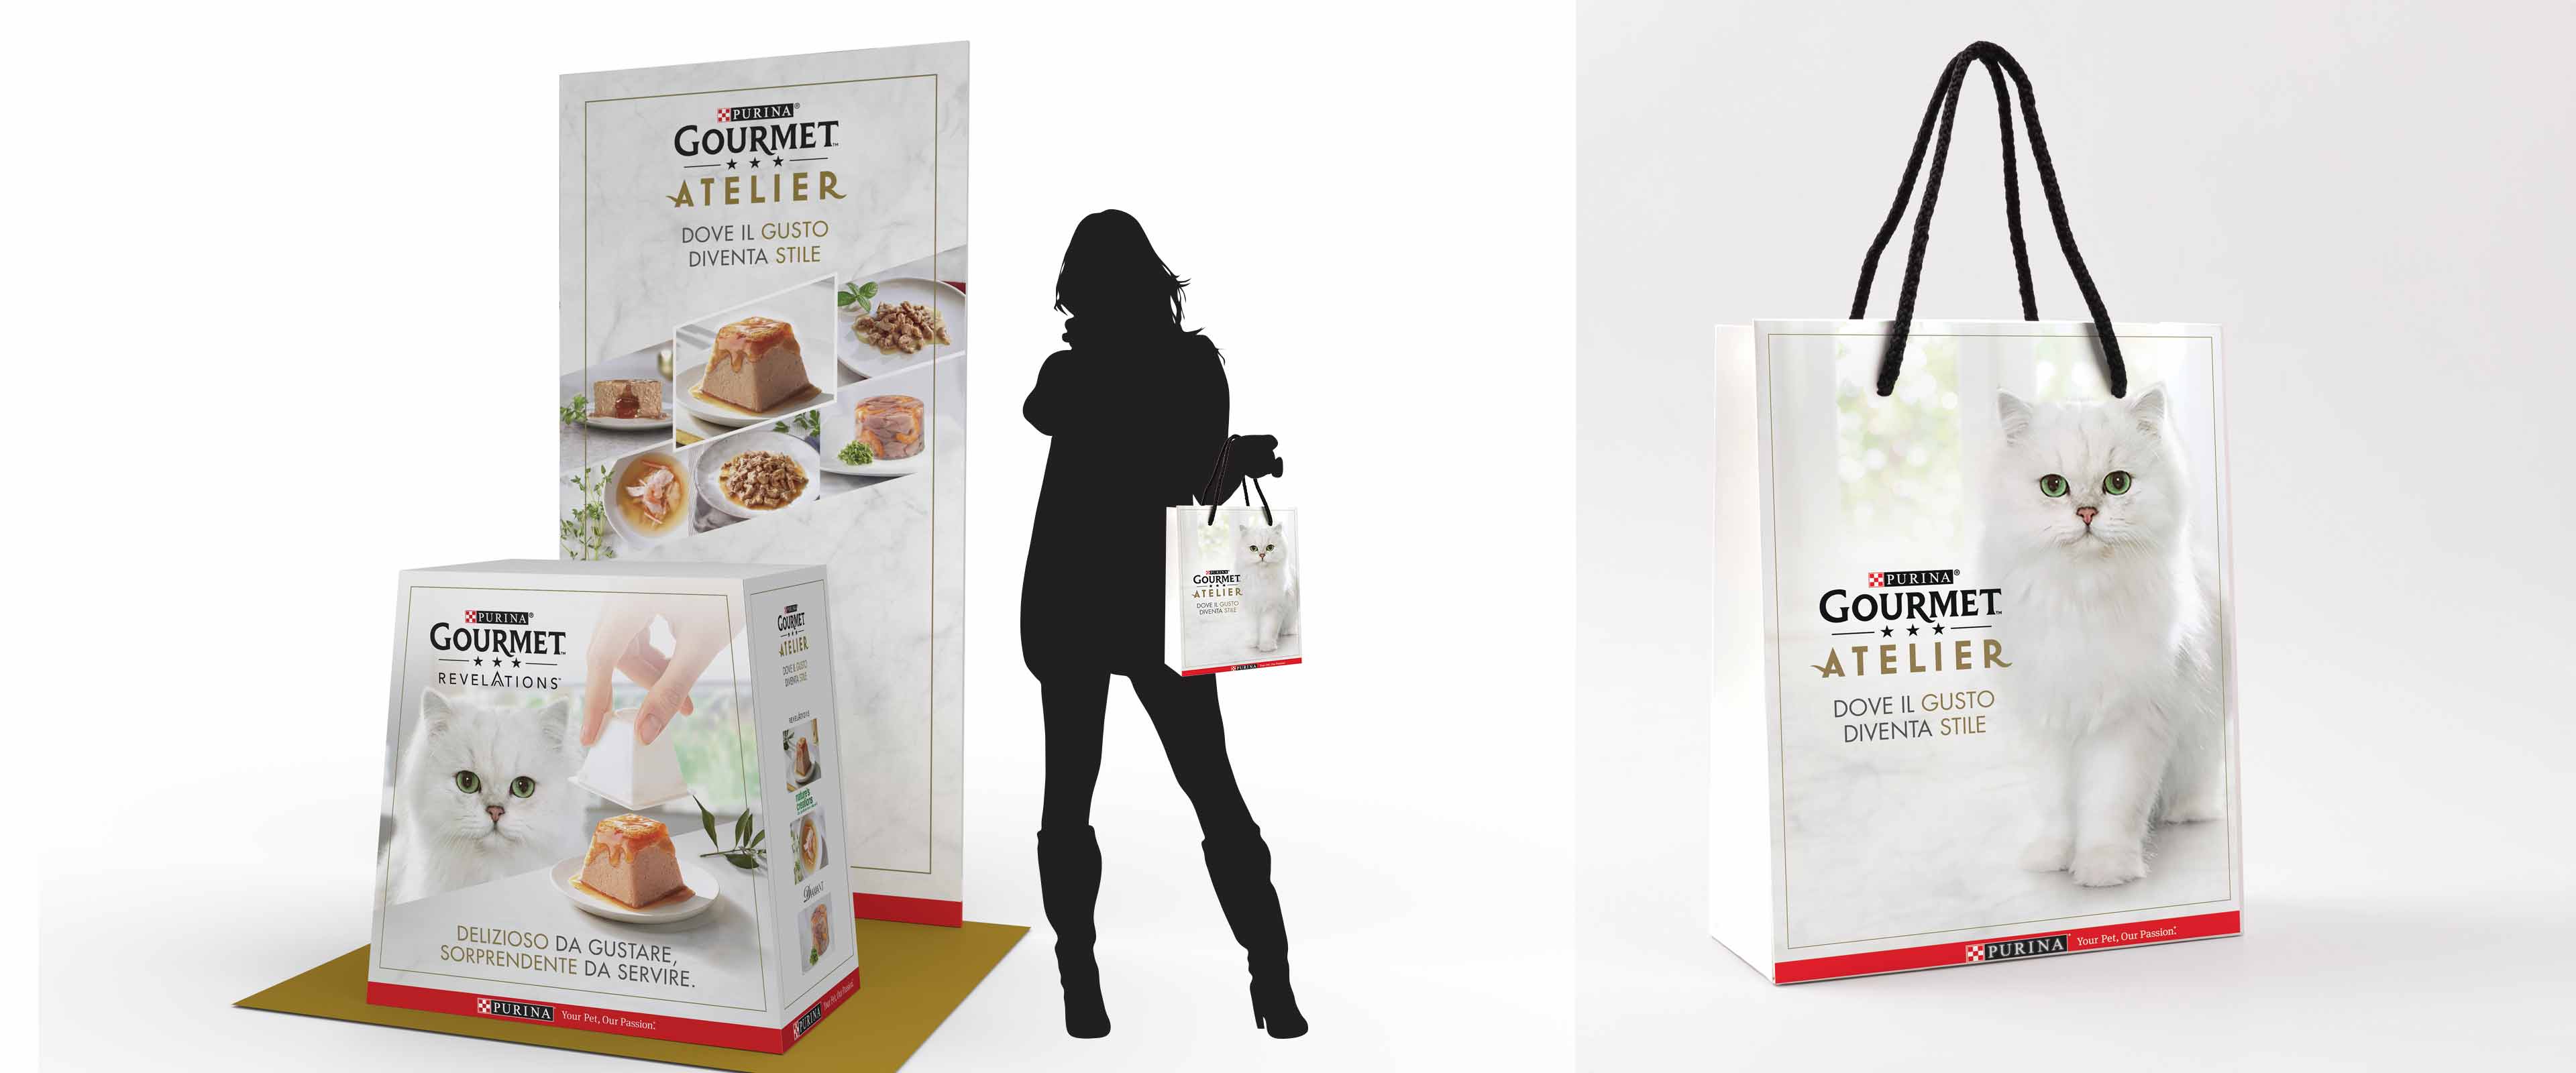 Isola promo e shopper per presentare il concept Gourmet Atelier